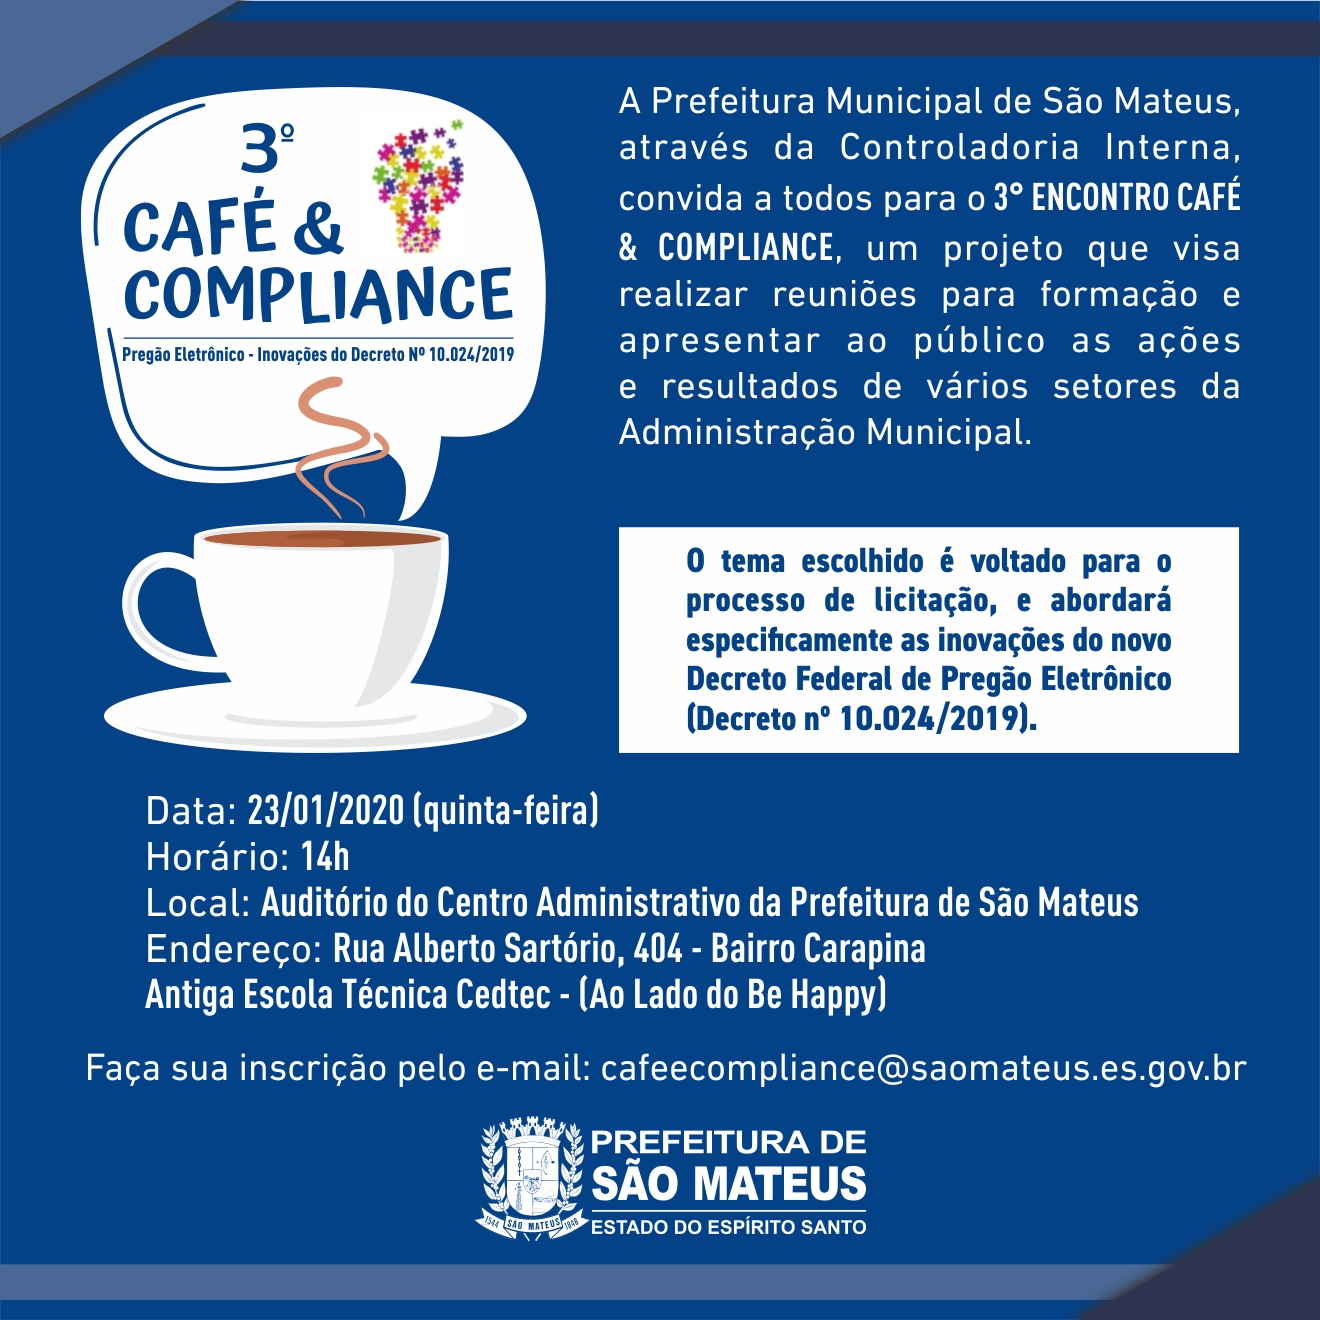 3º Café & Compliance